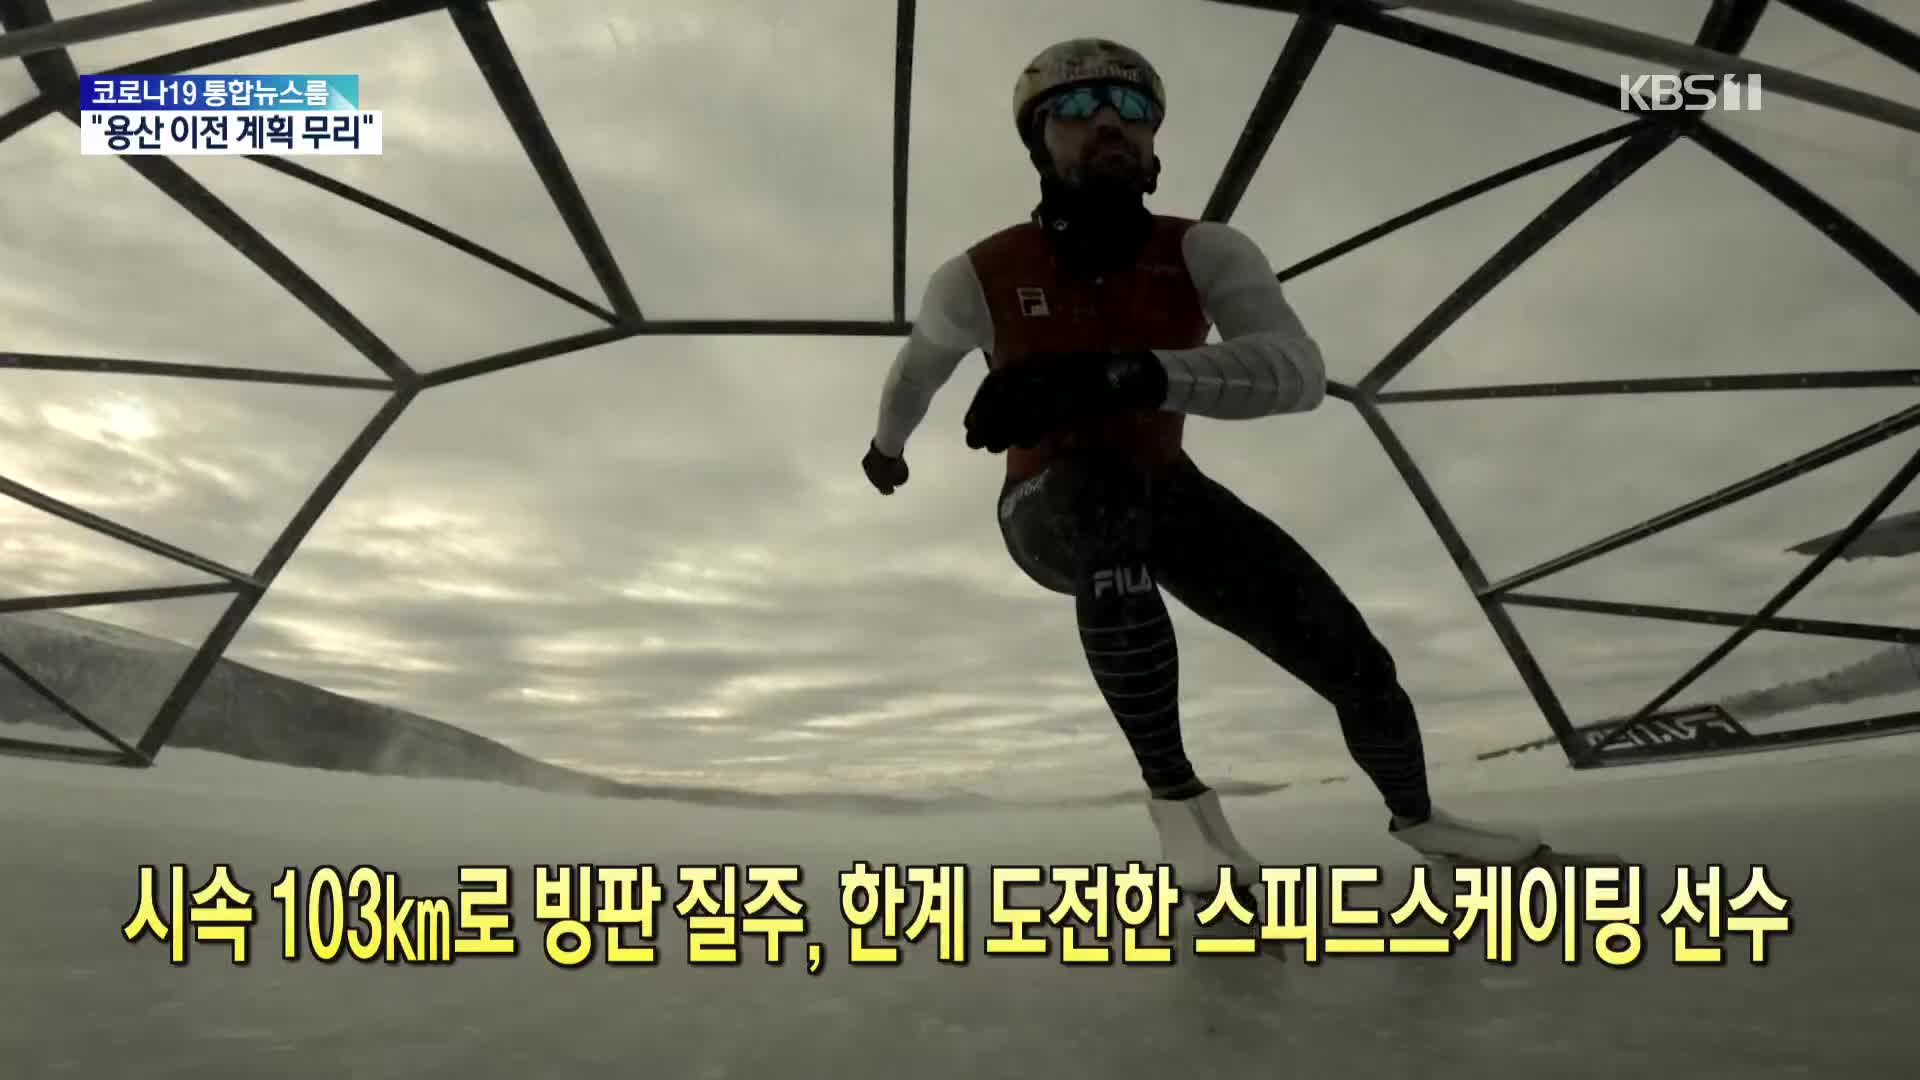 [톡톡 지구촌] 시속 103㎞로 빙판 질주, 한계 도전한 스피드스케이팅 선수